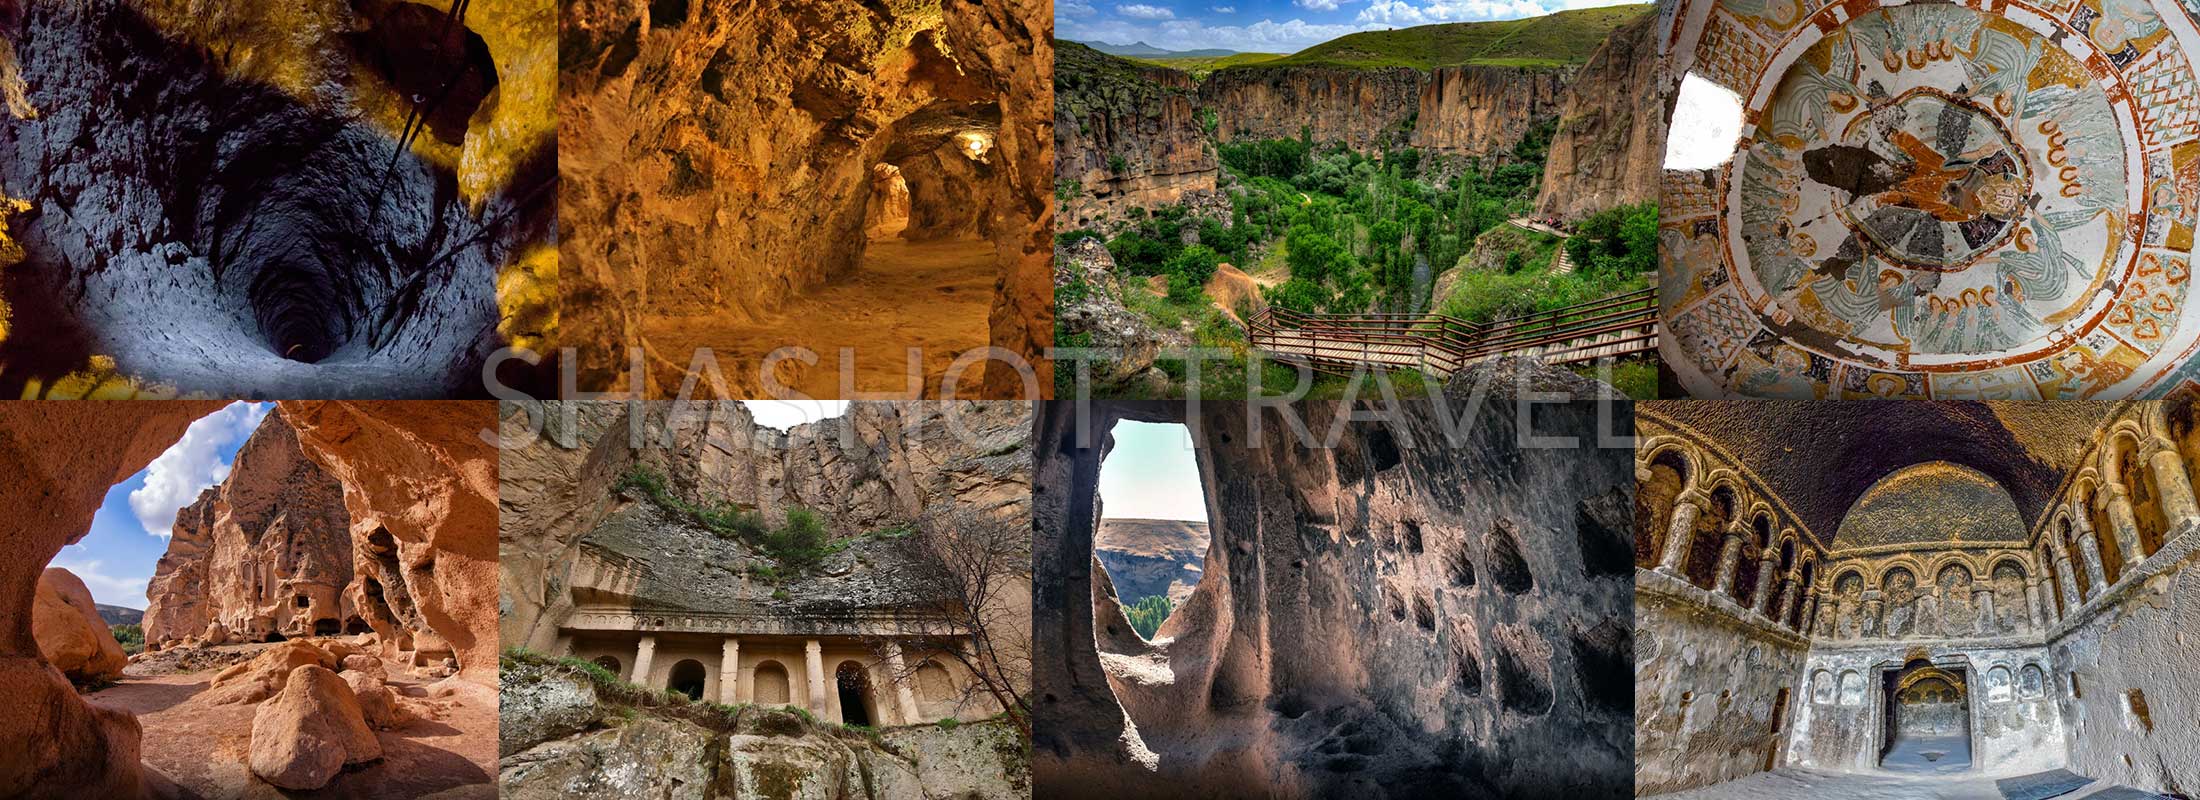 Capadocia-tours-turquia-shashot-travel-VALLE-DE-IHLARA